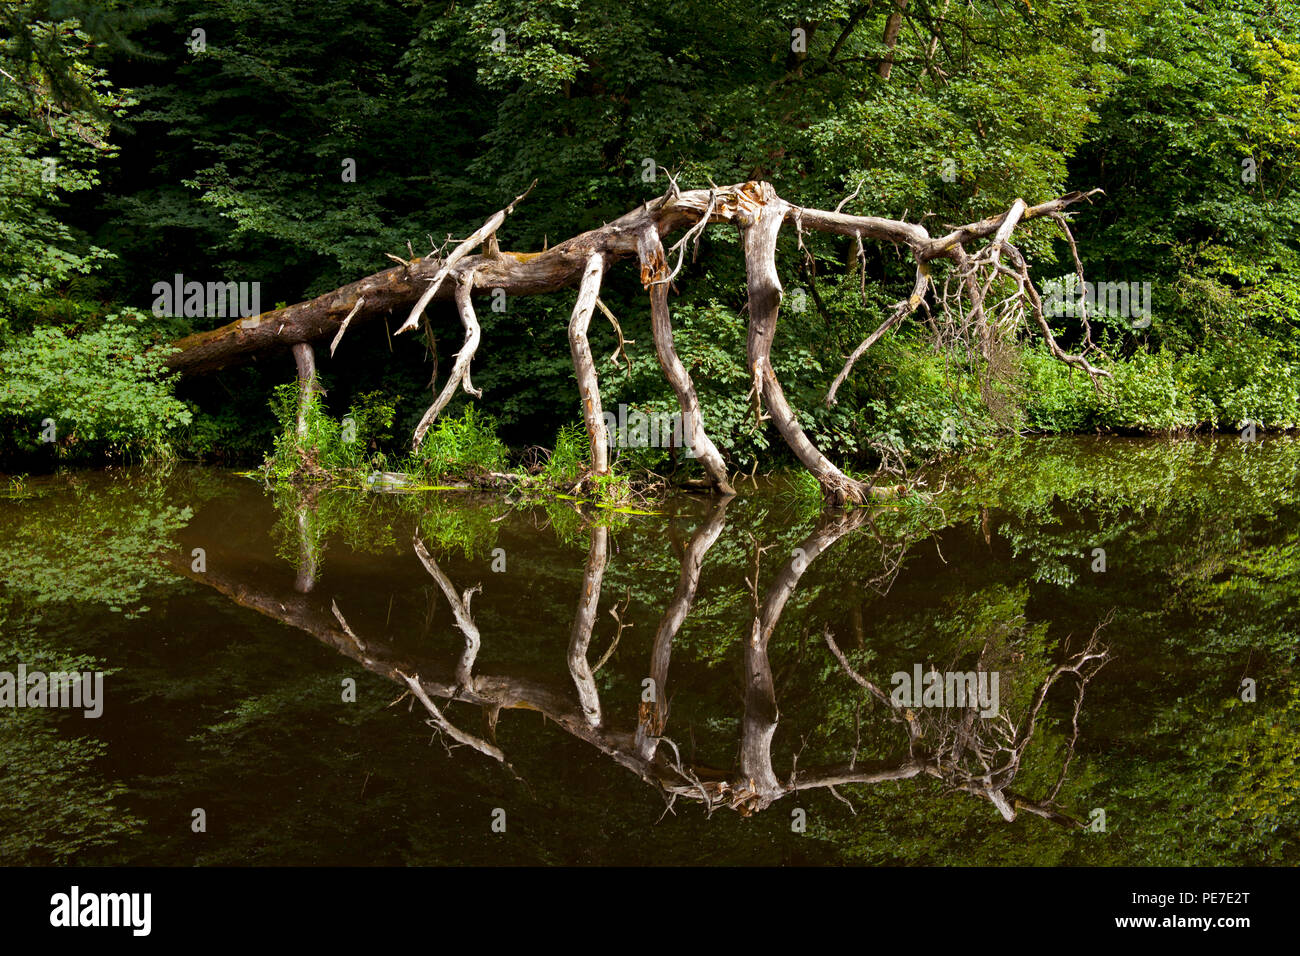 L'amande, la rivière arbre tombé qui est mort ressemble à un monstre préhistorique dinosaure, comme l'Est, Calder, West Lothian, Scotland, UK Banque D'Images